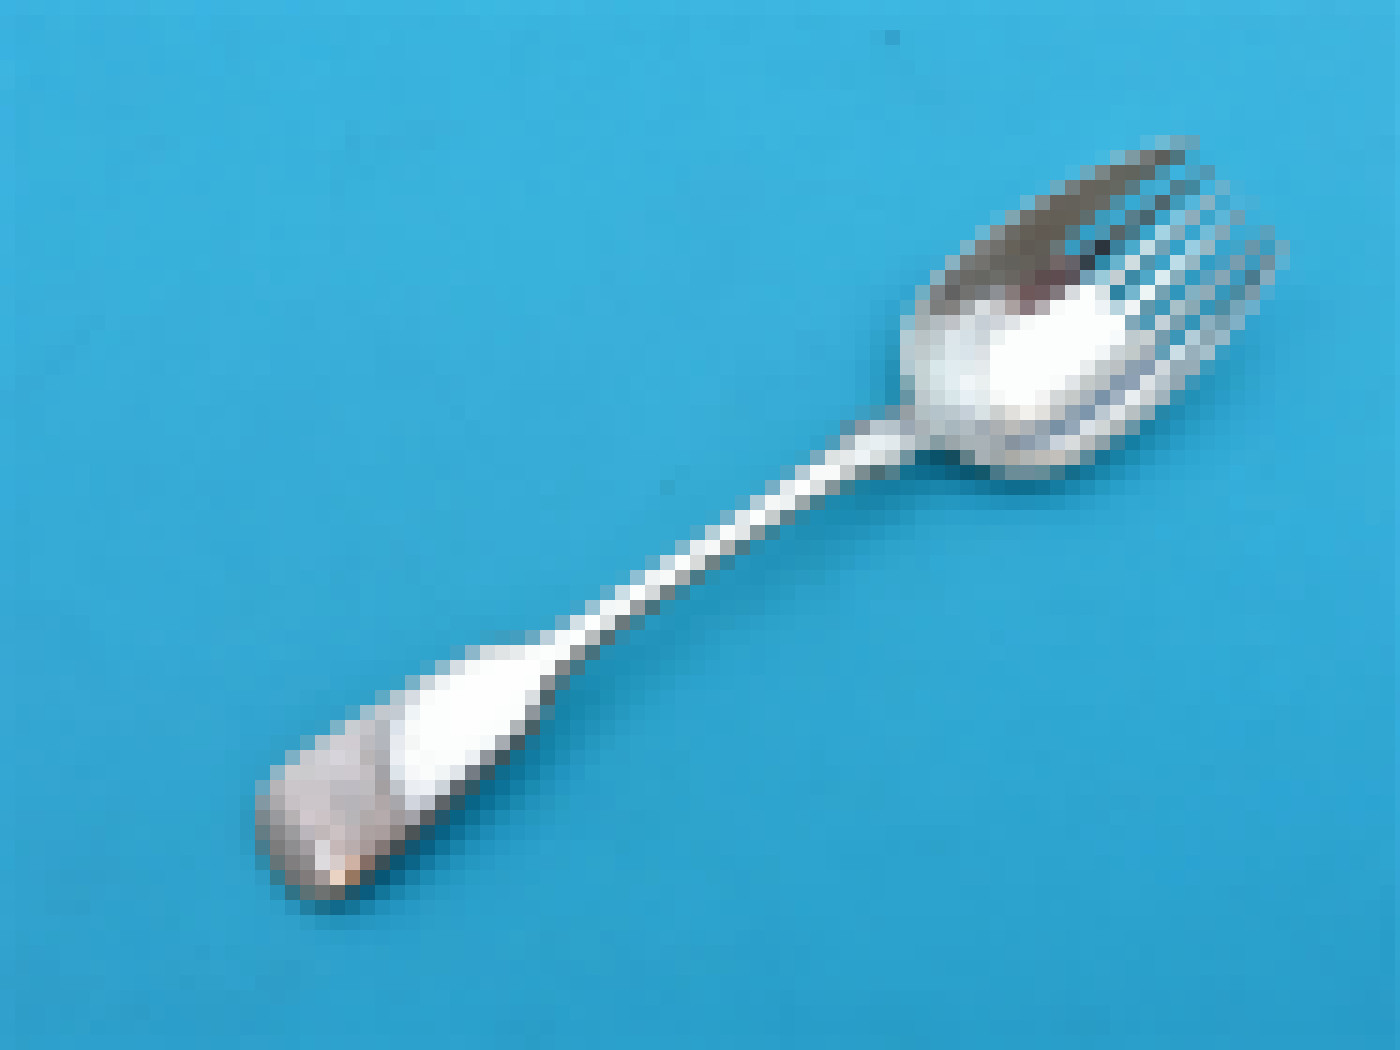 Silver Runcible spoon